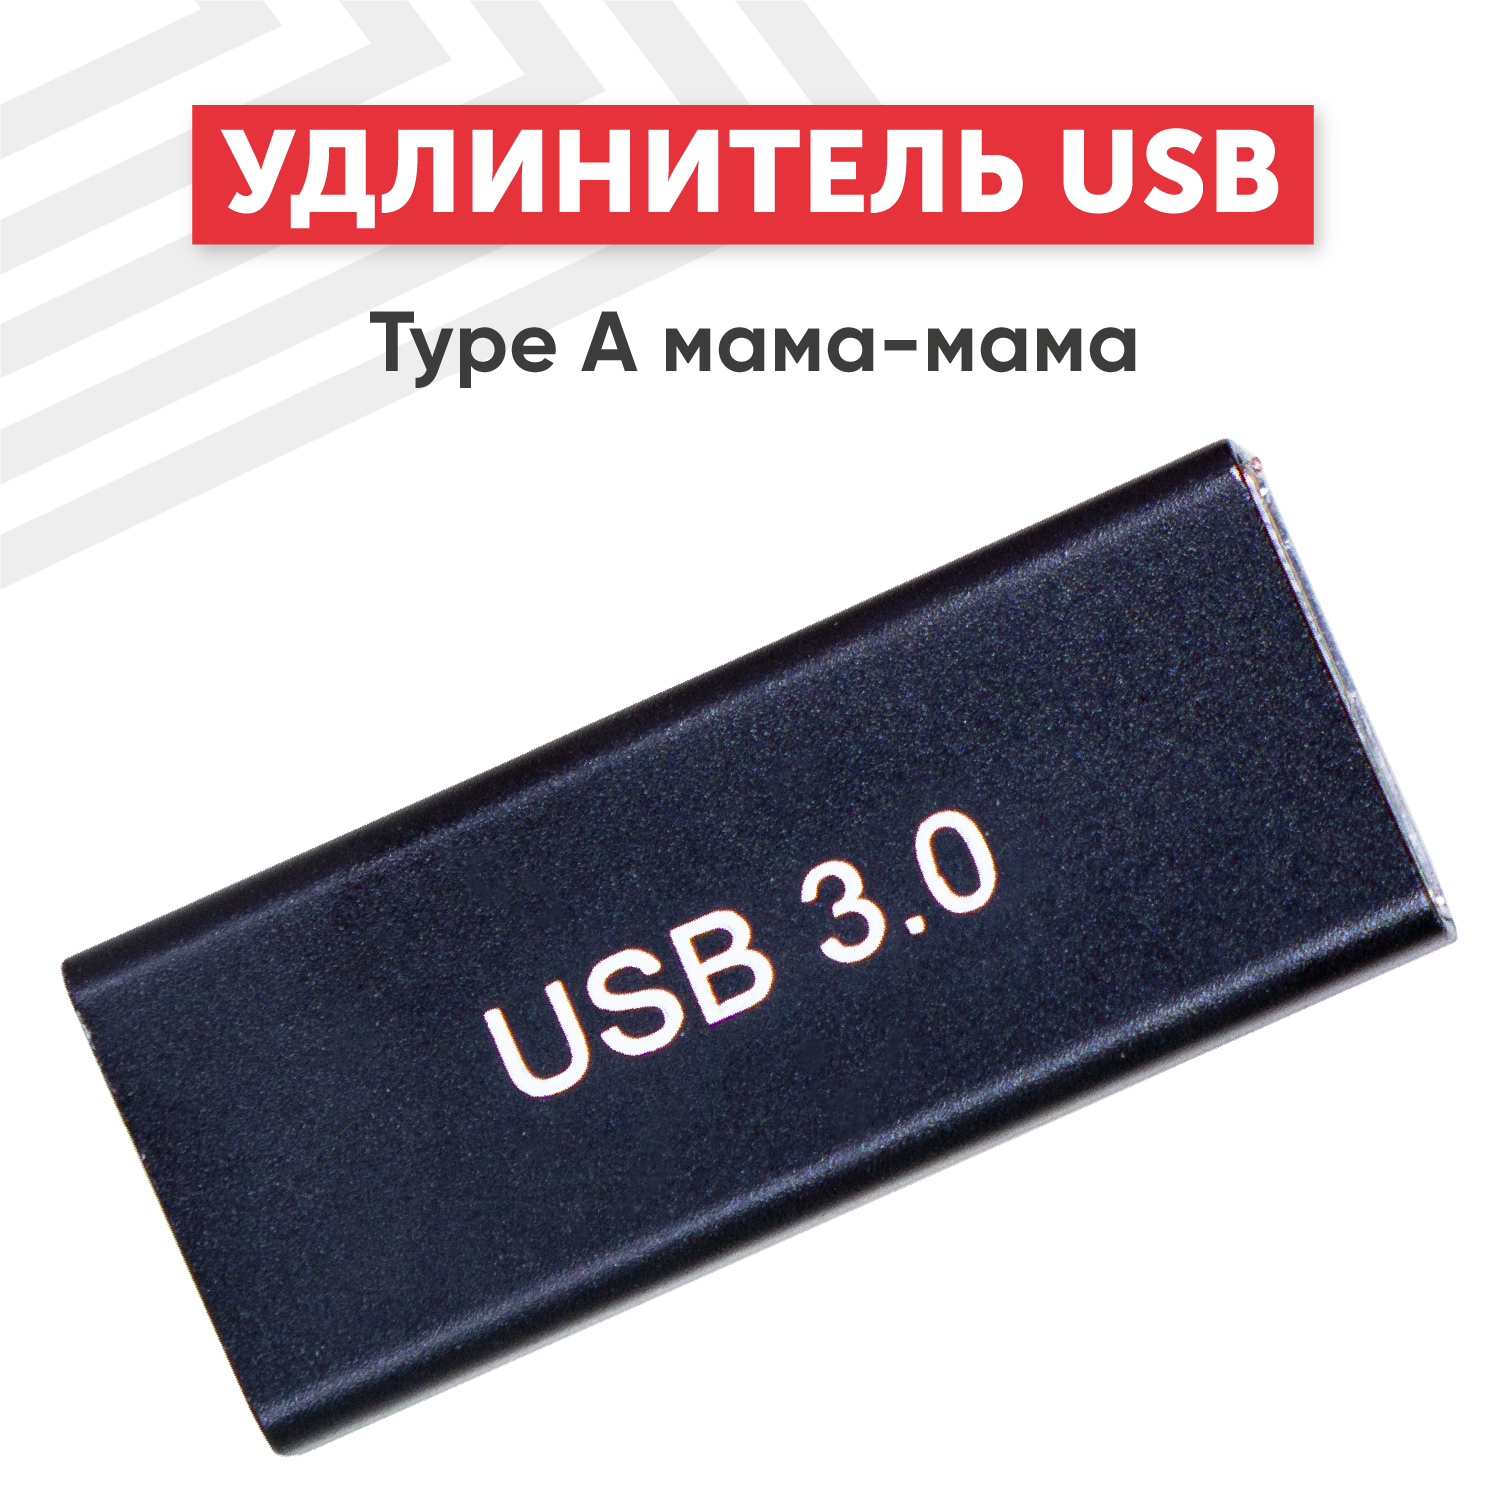 Прямой адаптер-переходник (коннектор сетевой адаптер) USB 3.0 Type-A мама - мама для мышки клавиатуры джойстика ноутбука